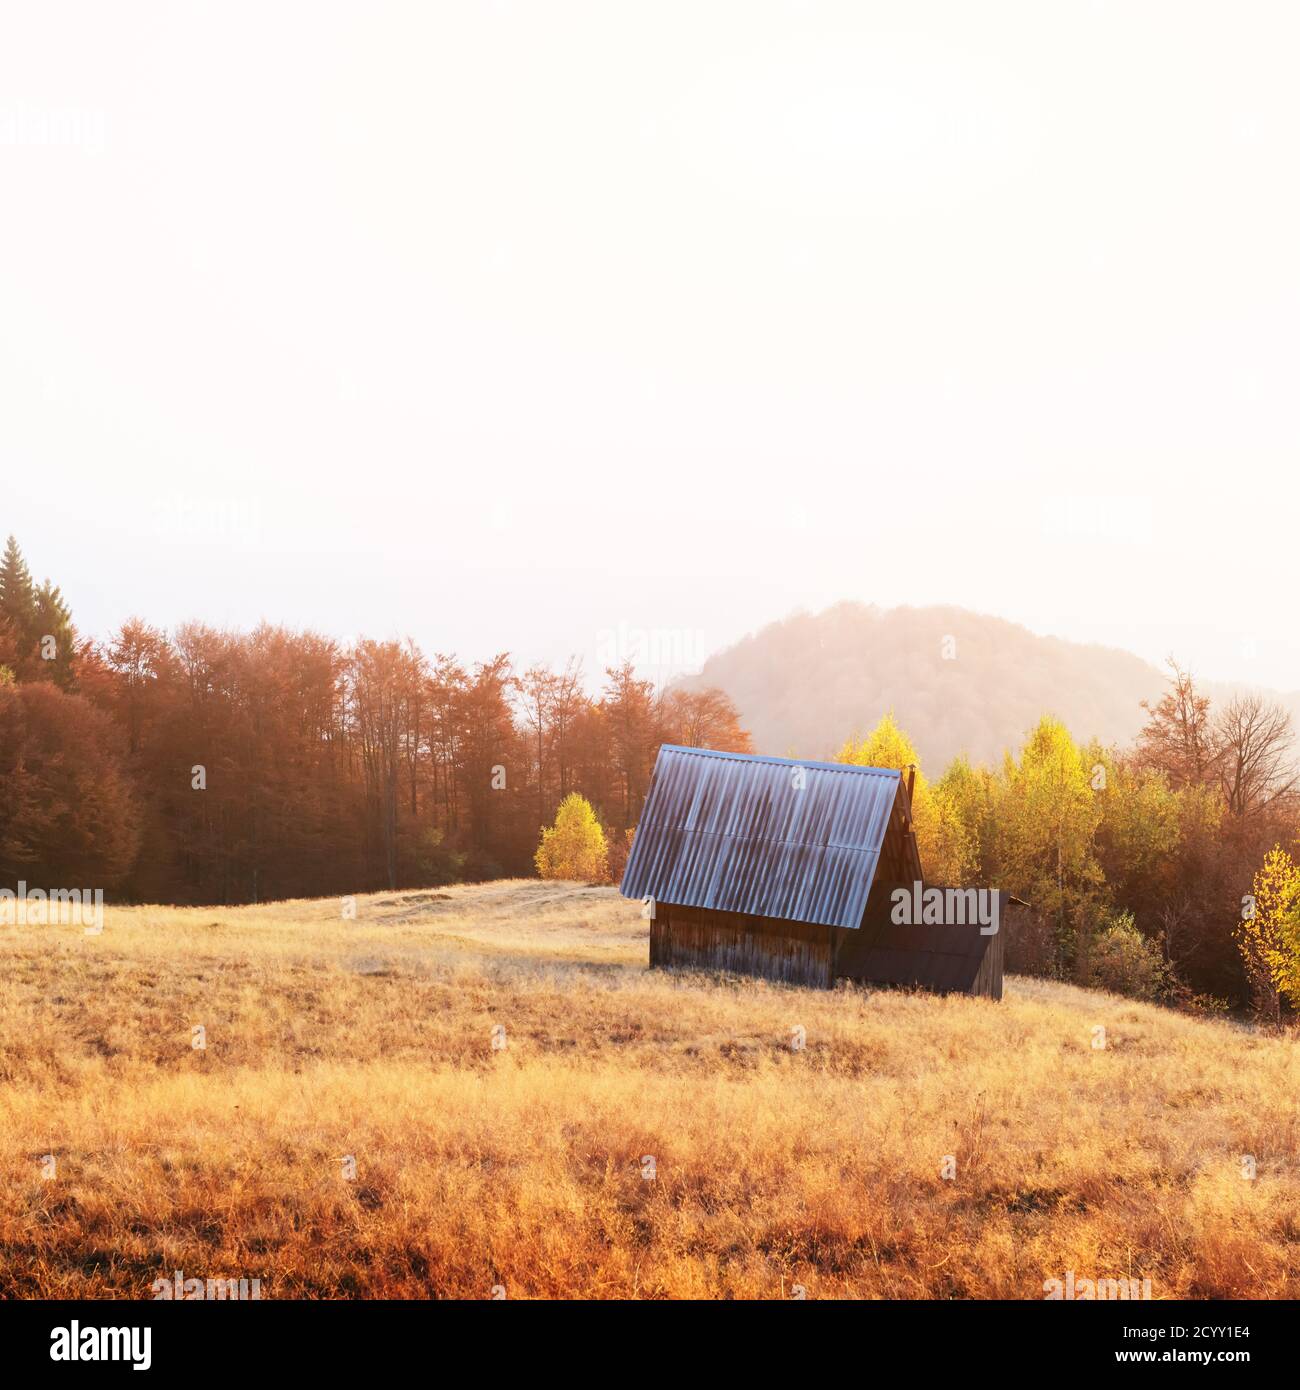 Pintoresco prado con casa de madera y hayas rojas en las montañas de otoño. Fotografía de paisajes Foto de stock